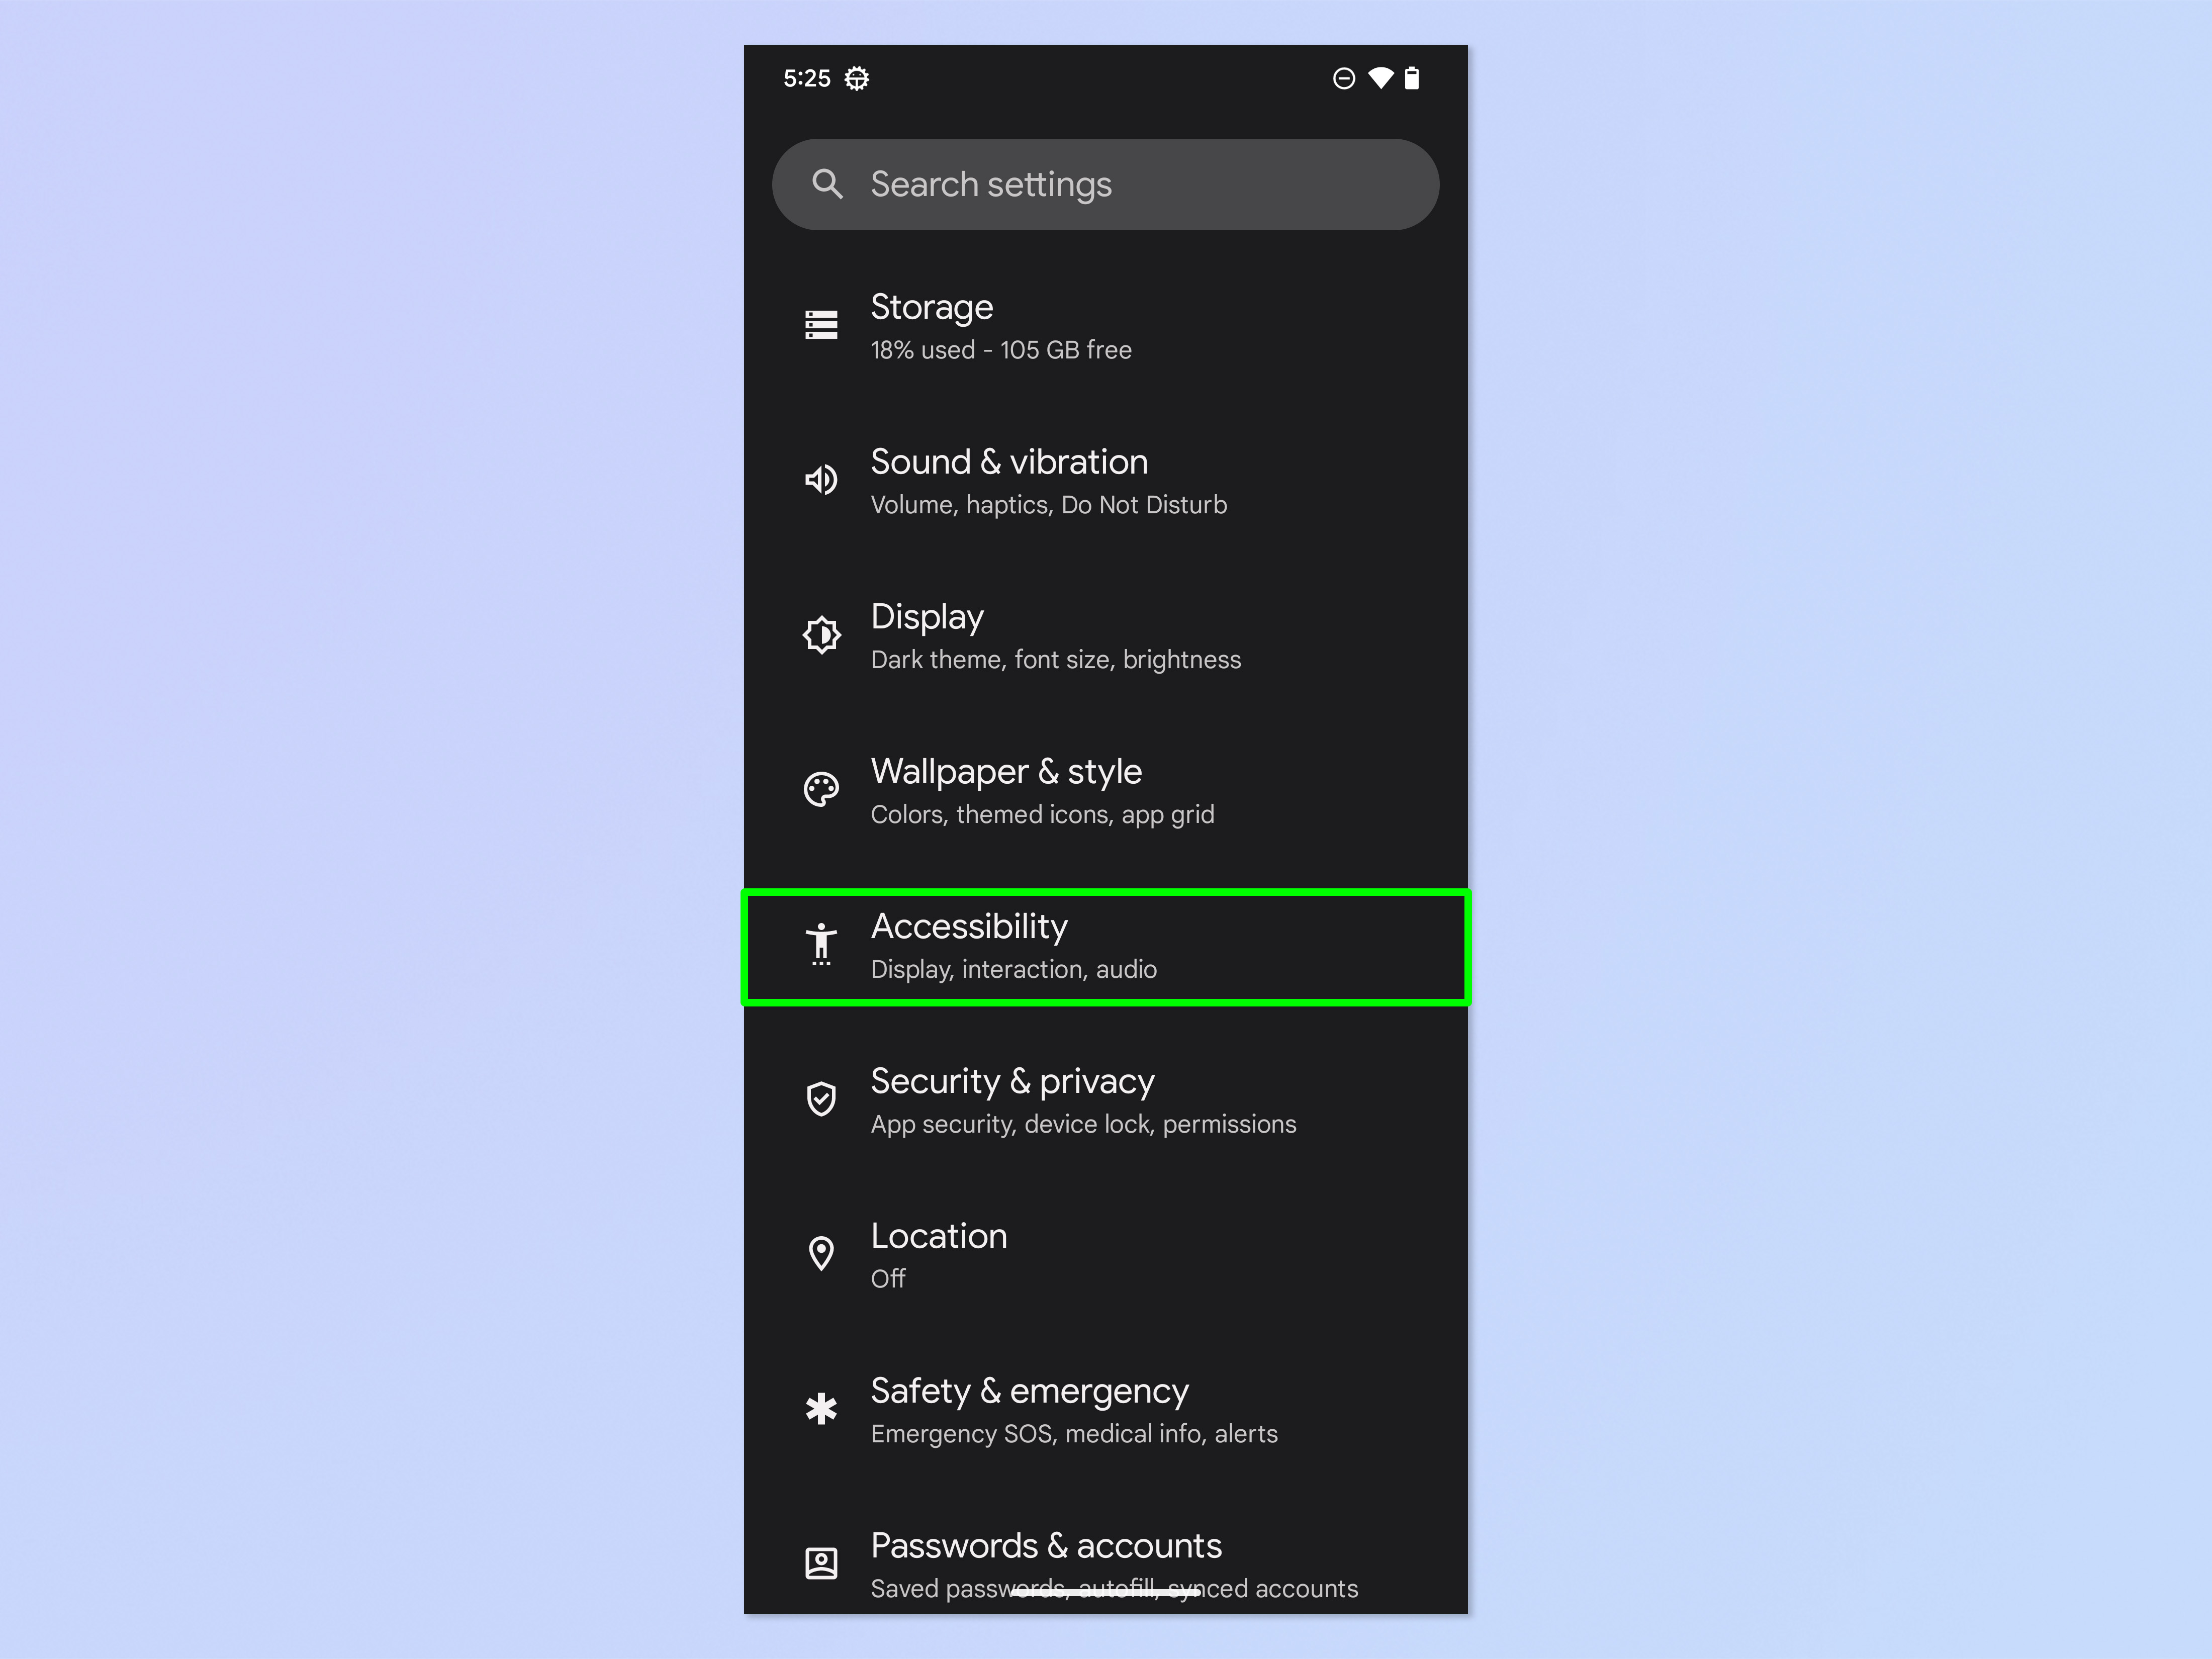 Скриншот, показывающий шаги, необходимые для использования Live Transcribe на Android.